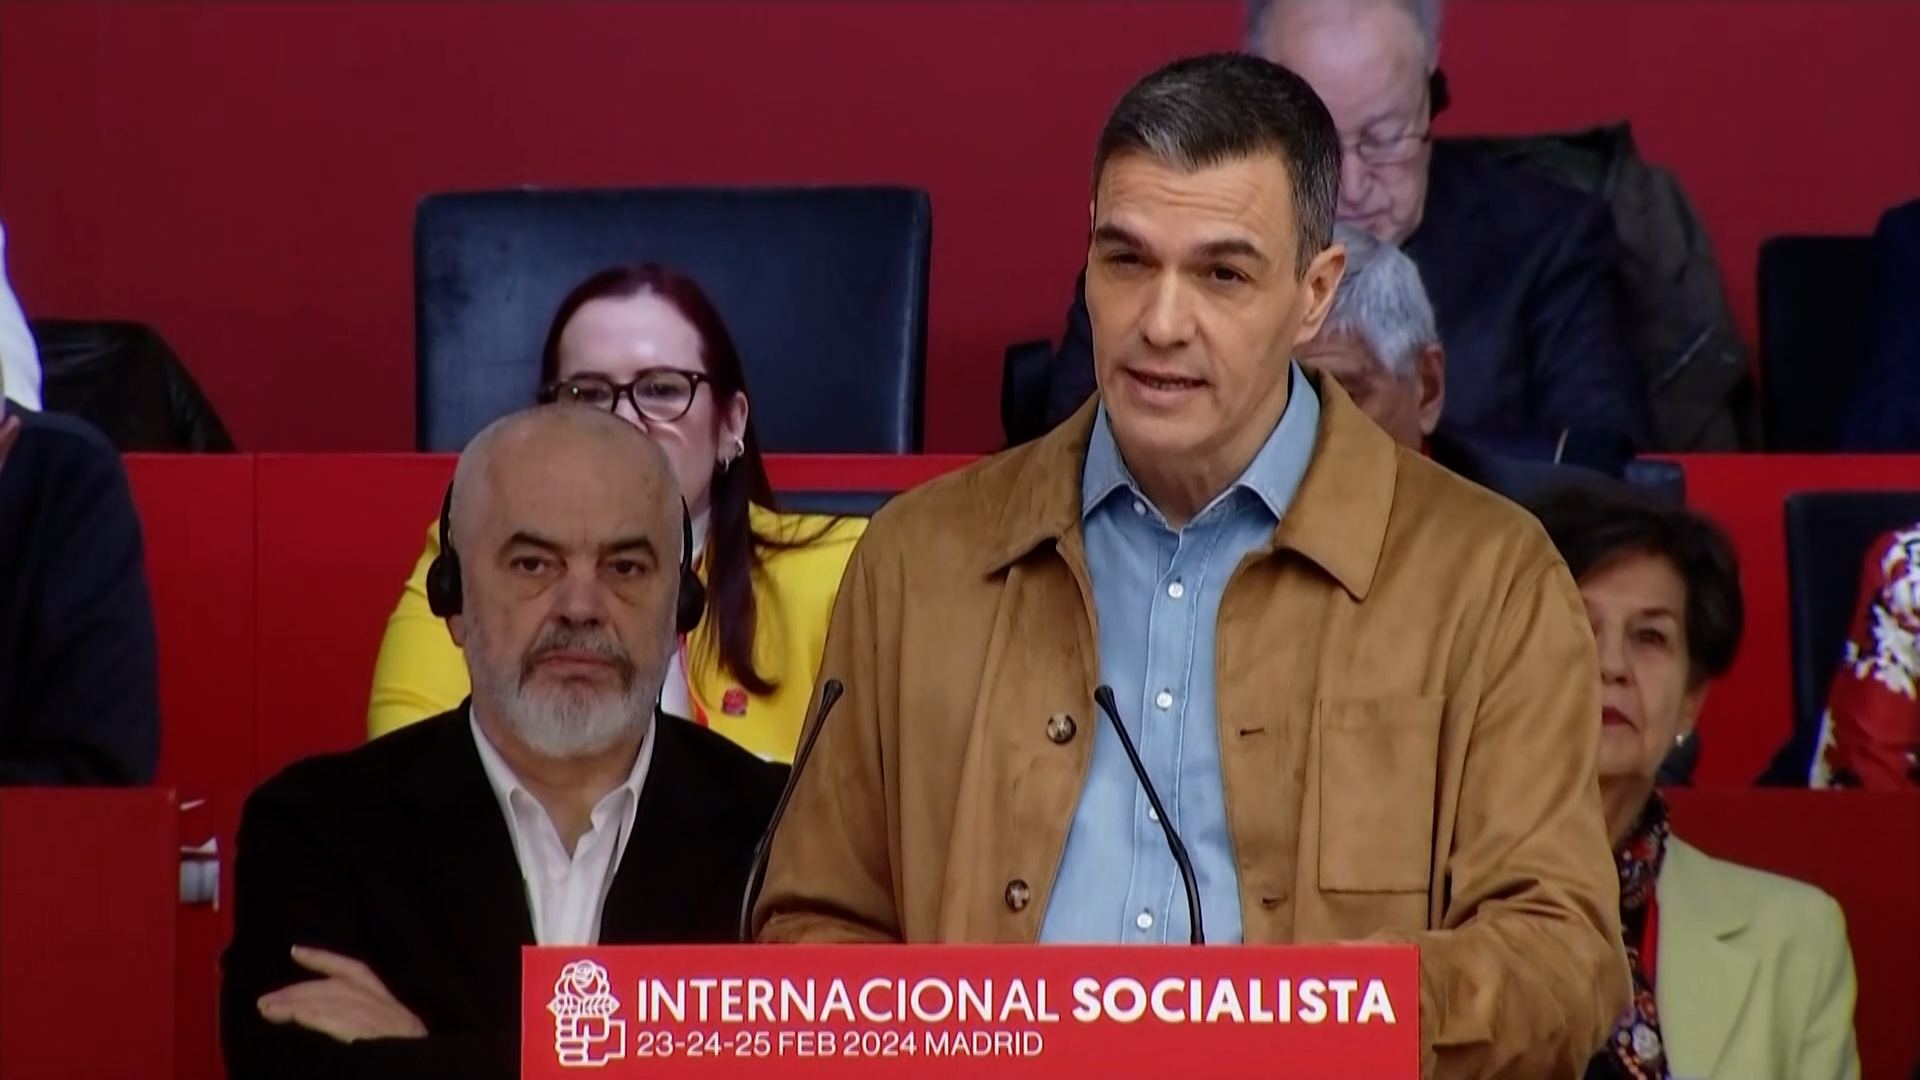 Pedro Sánchez: "La lucha contra la corrupción ha de ser implacable, venga de donde venga y caiga quien caiga"